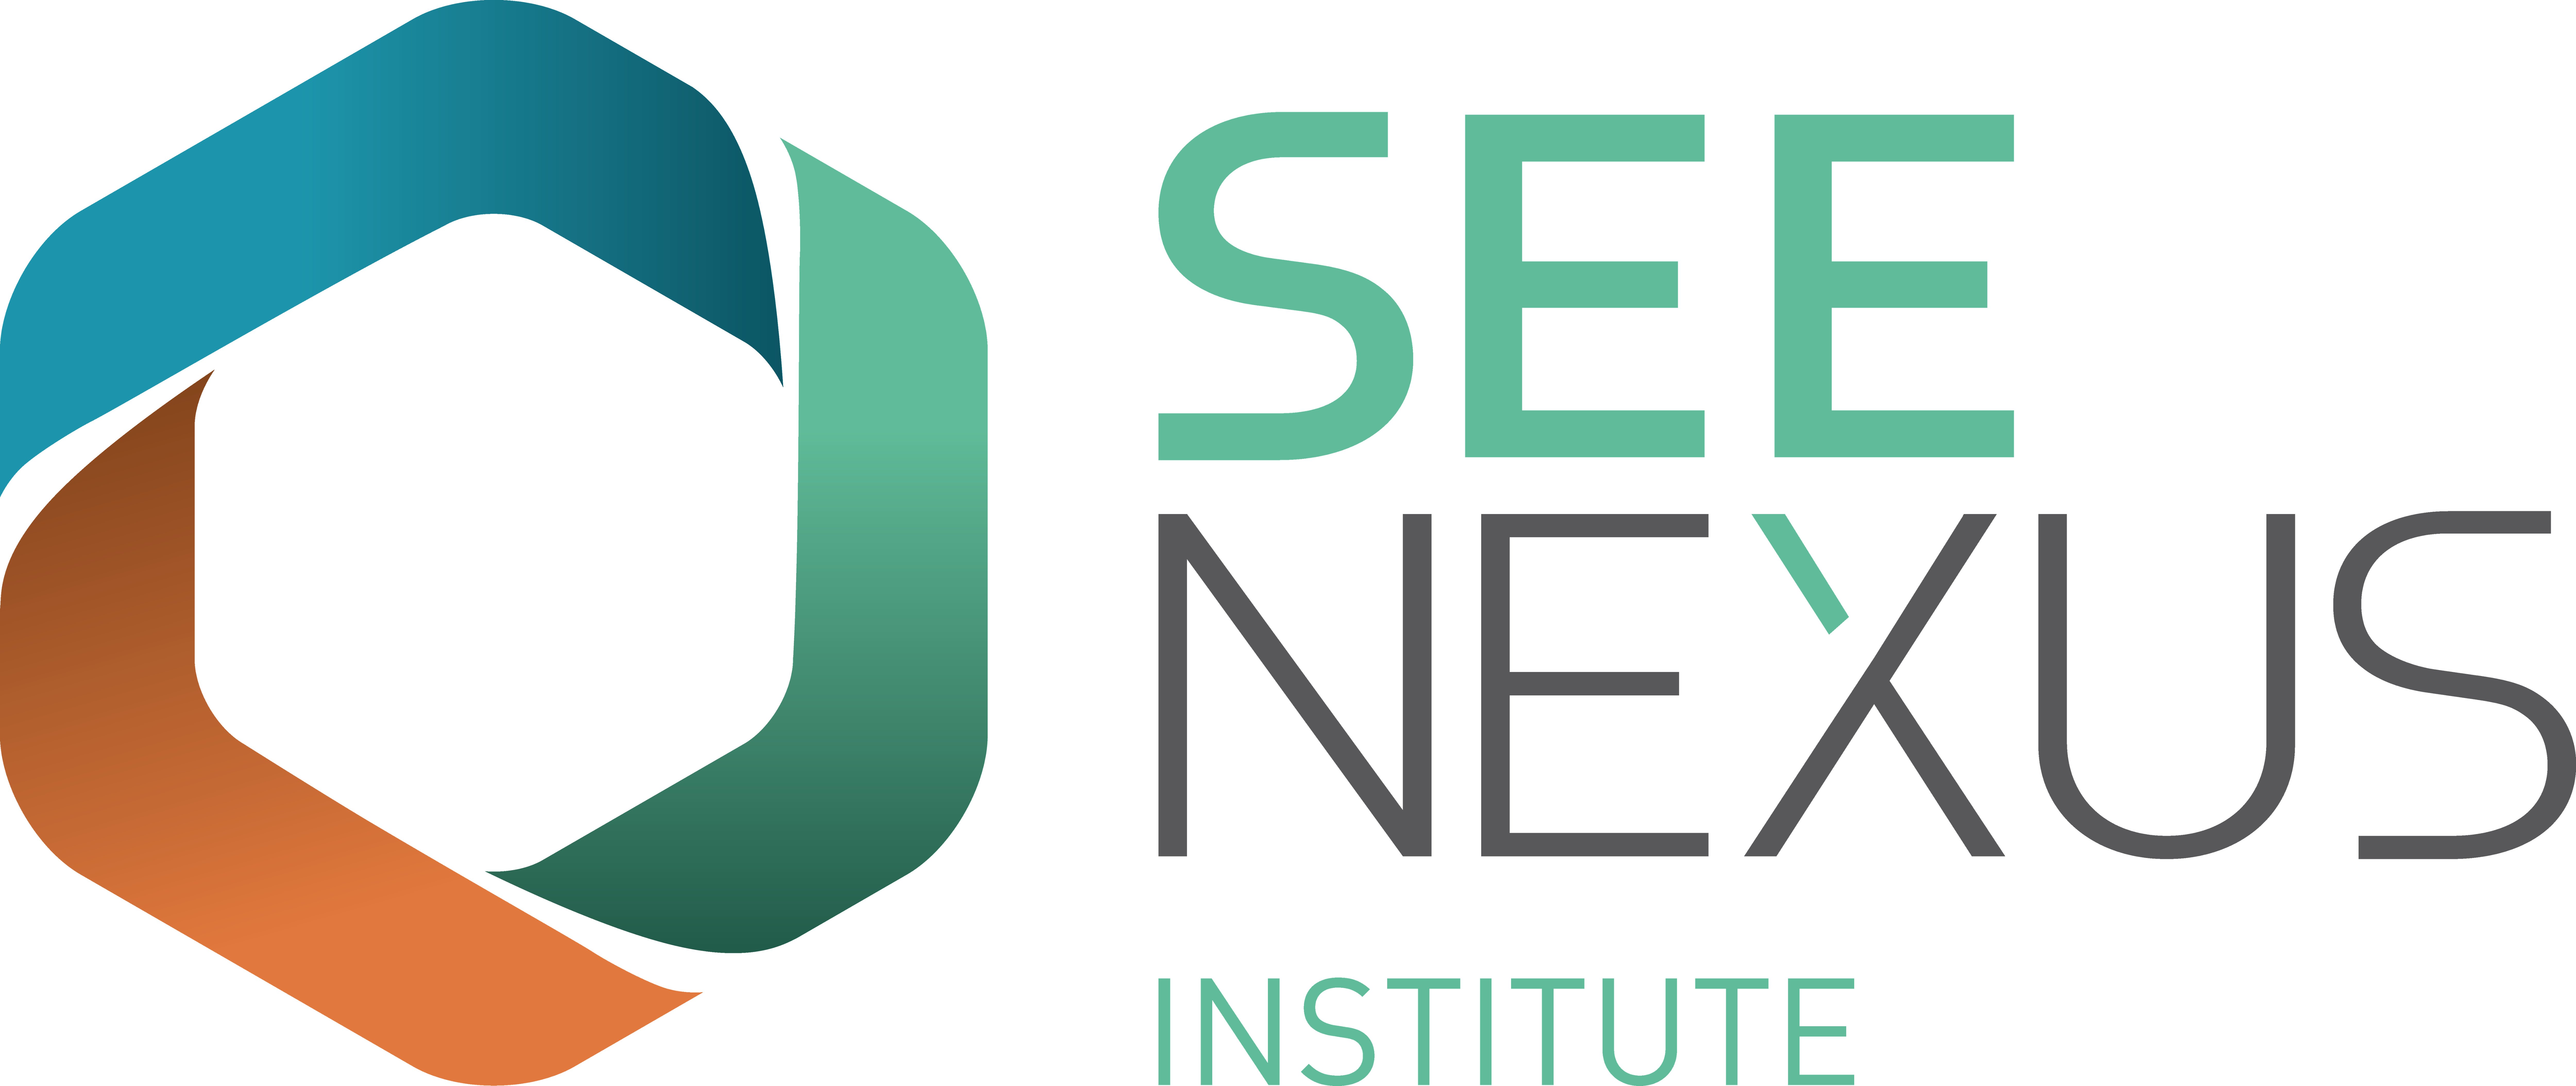 SeeNexus Institute